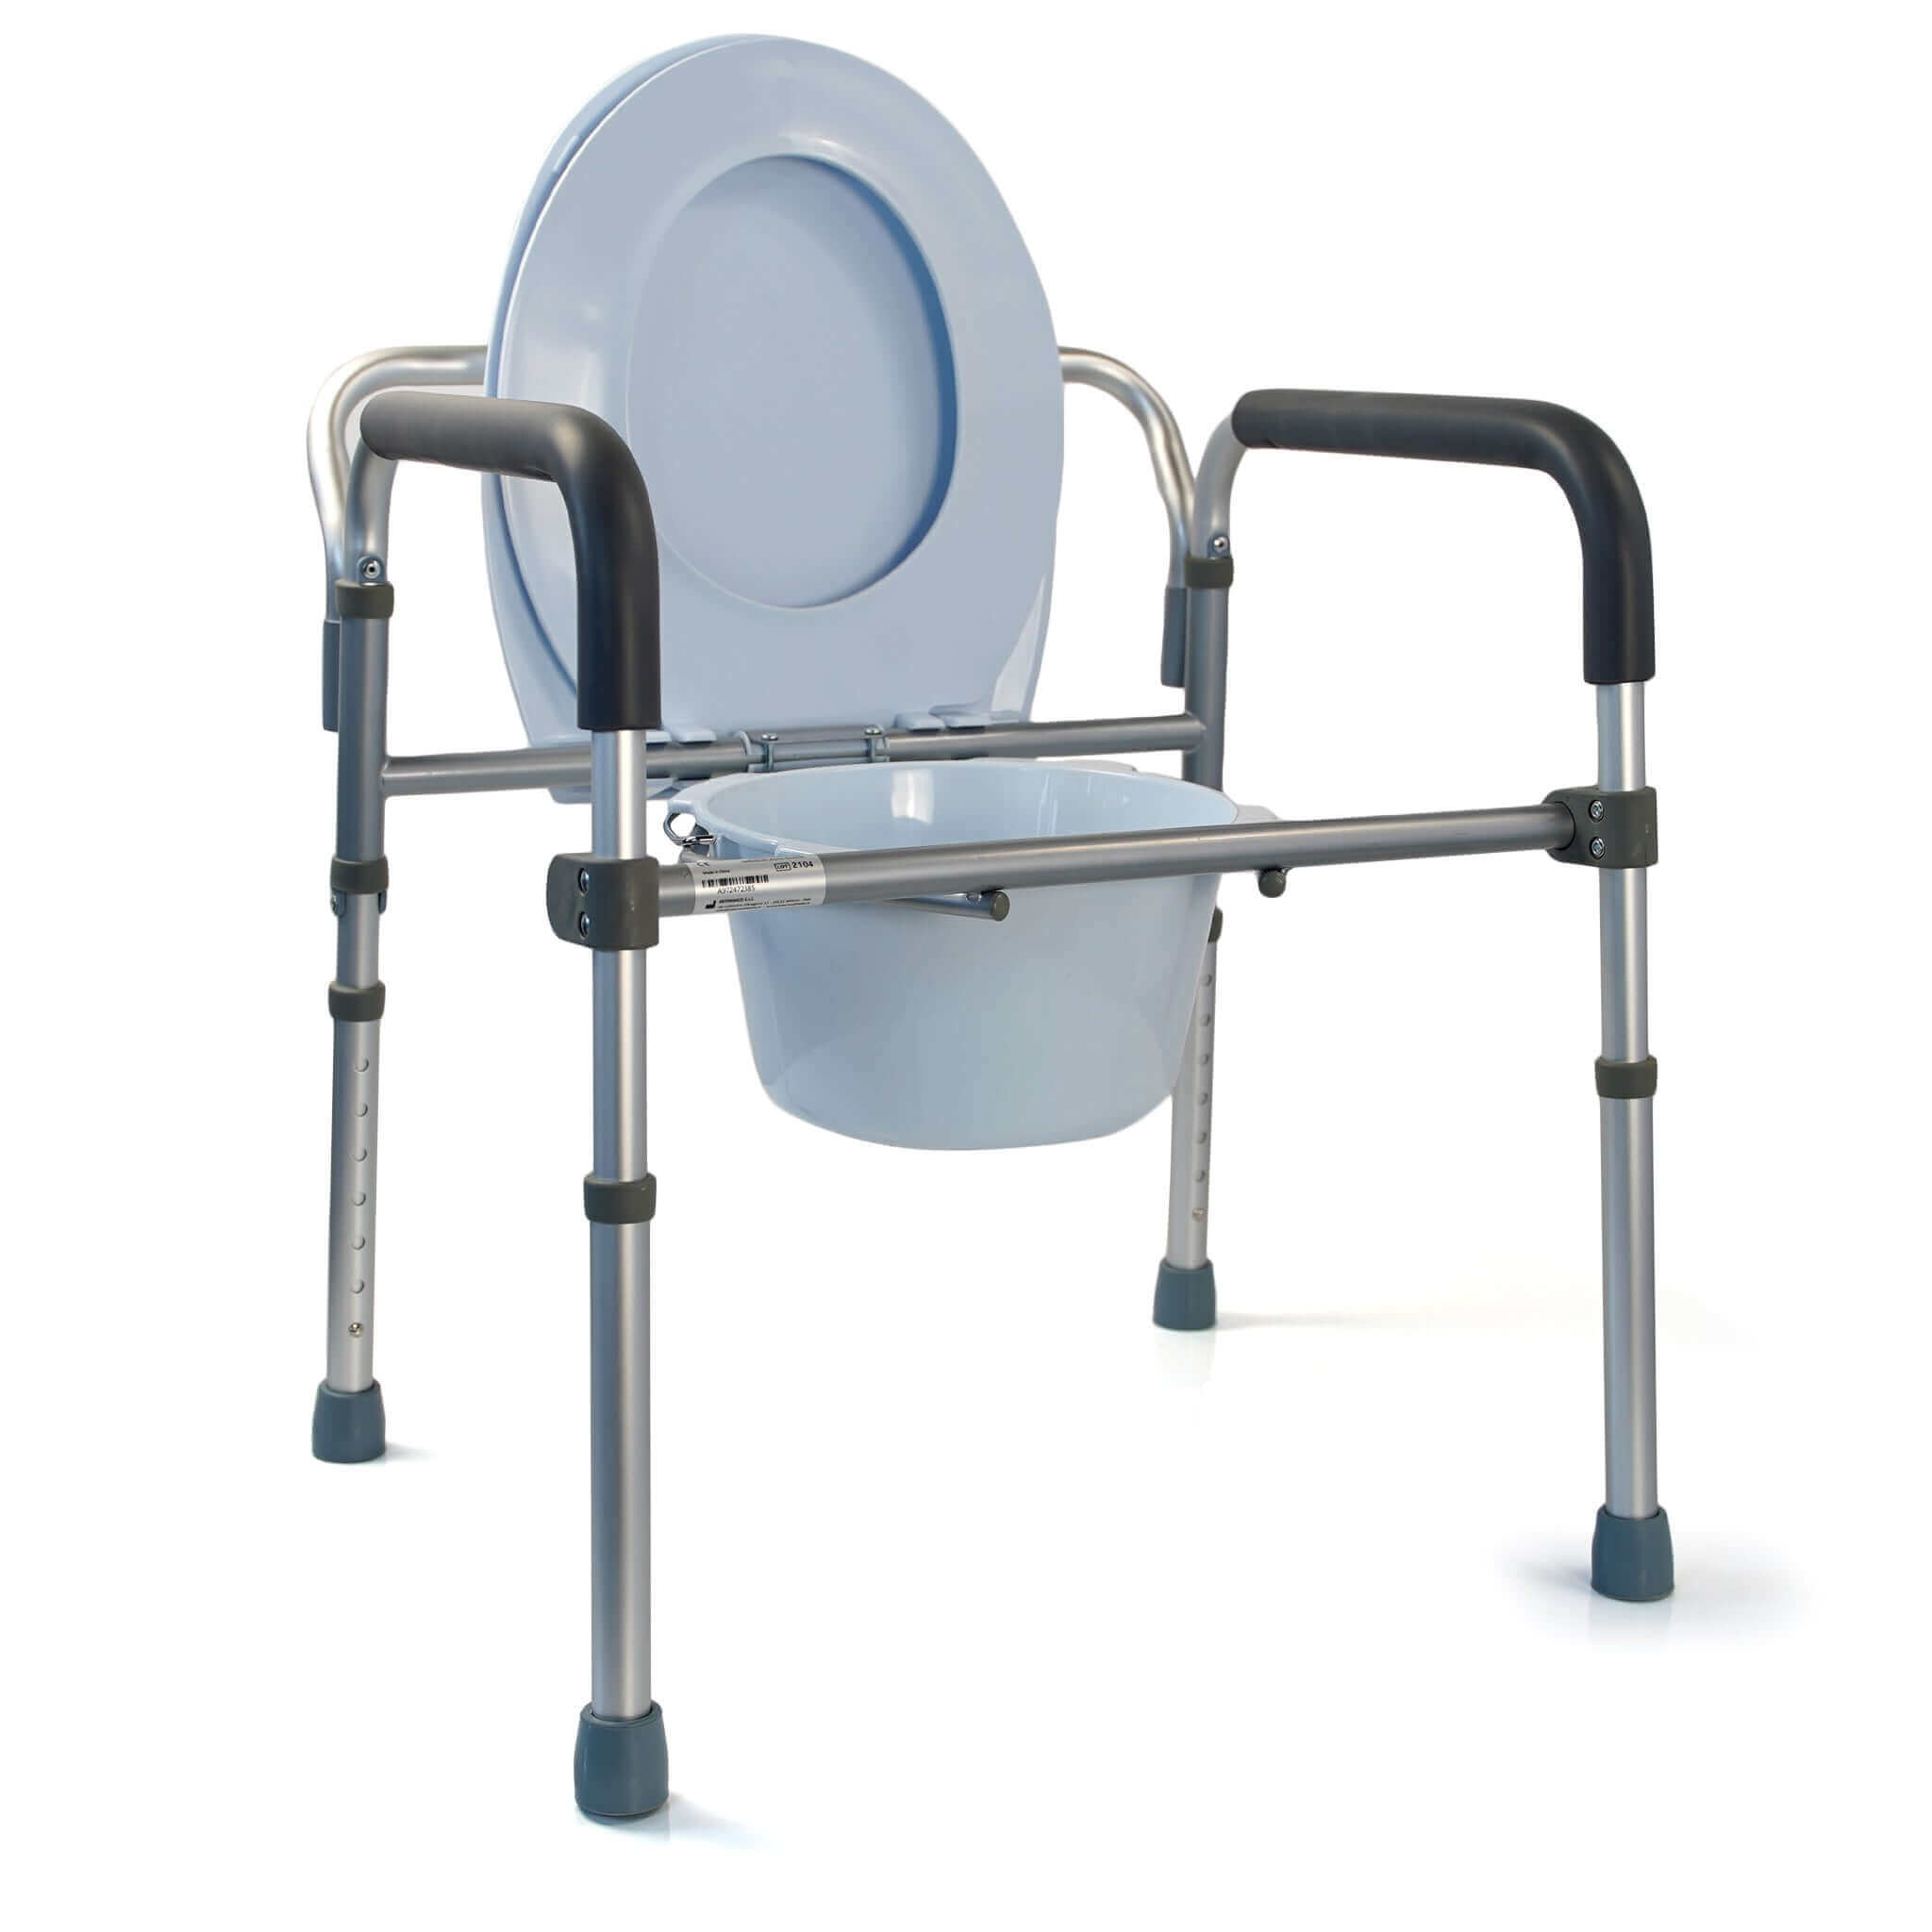 Comoda WC Per Anziani e Disabili Pieghevole Leggera Rialzo Sedia